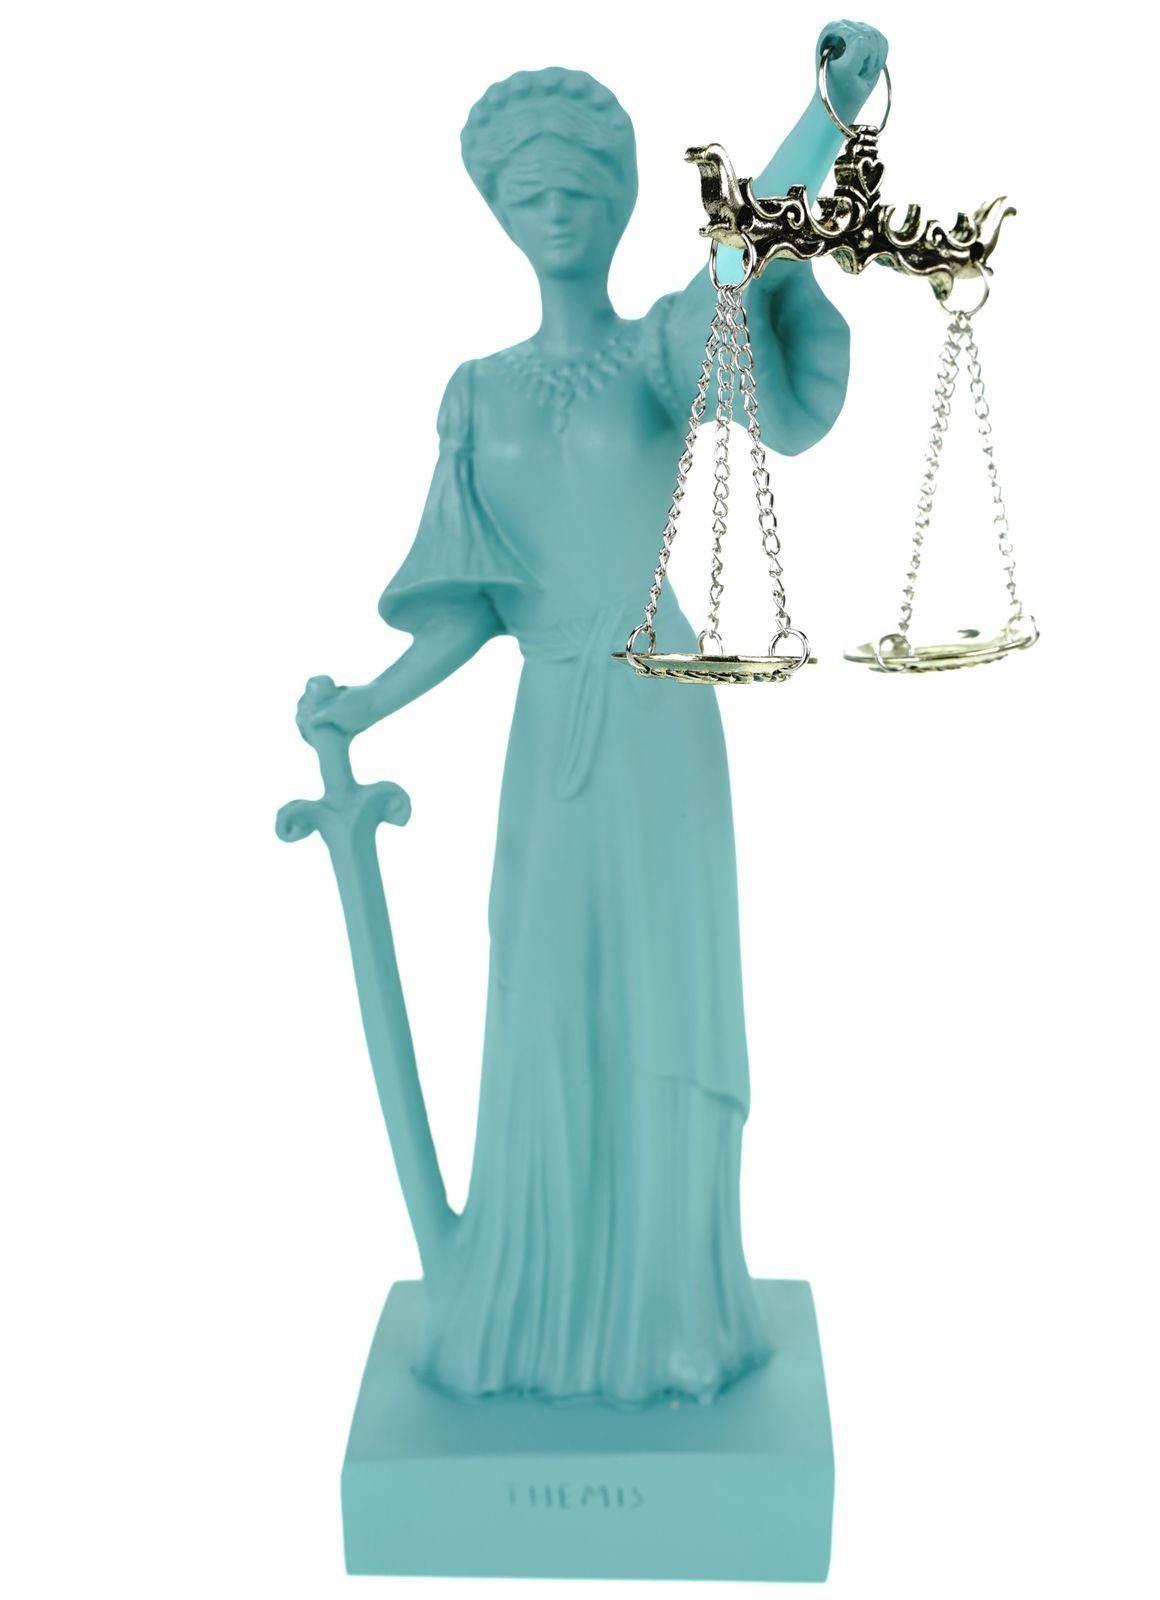 Kremers Schatzkiste Dekofigur Alabaster Justitia Göttin Figur Skulptur BGB Recht Gerechtigkeit 25 cm Türkis